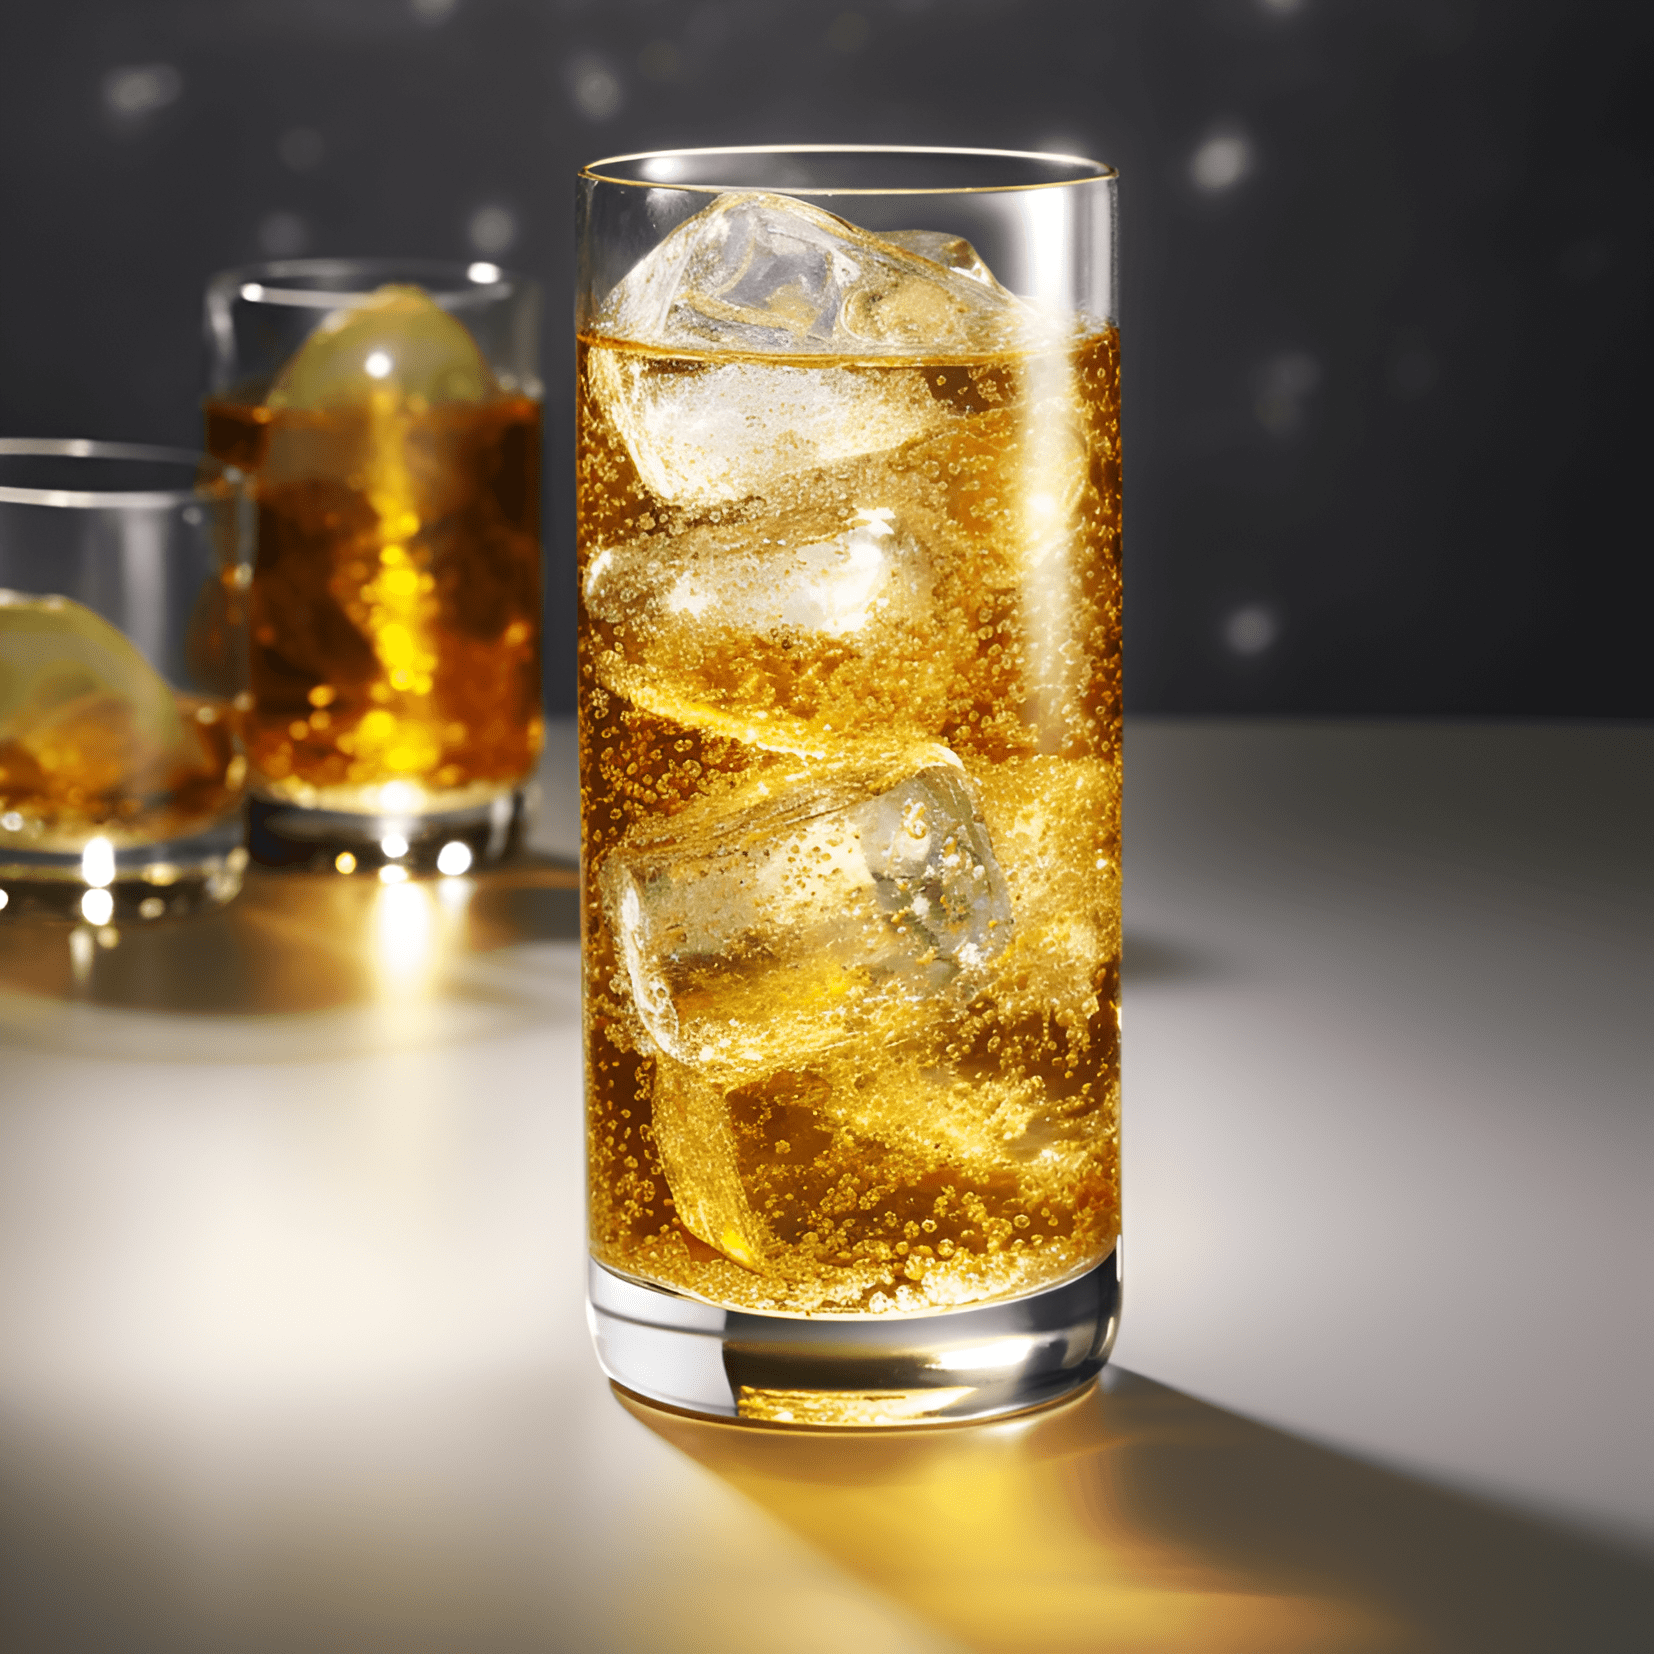 Highball Cóctel Receta - El cóctel Highball es una bebida refrescante, efervescente y versátil. Su sabor se puede describir como crujiente, limpio y ligeramente dulce, con un sutil toque de amargor del agua con gas. El whisky añade calidez y profundidad, mientras que el agua con gas aligera la bebida y añade una agradable efervescencia.